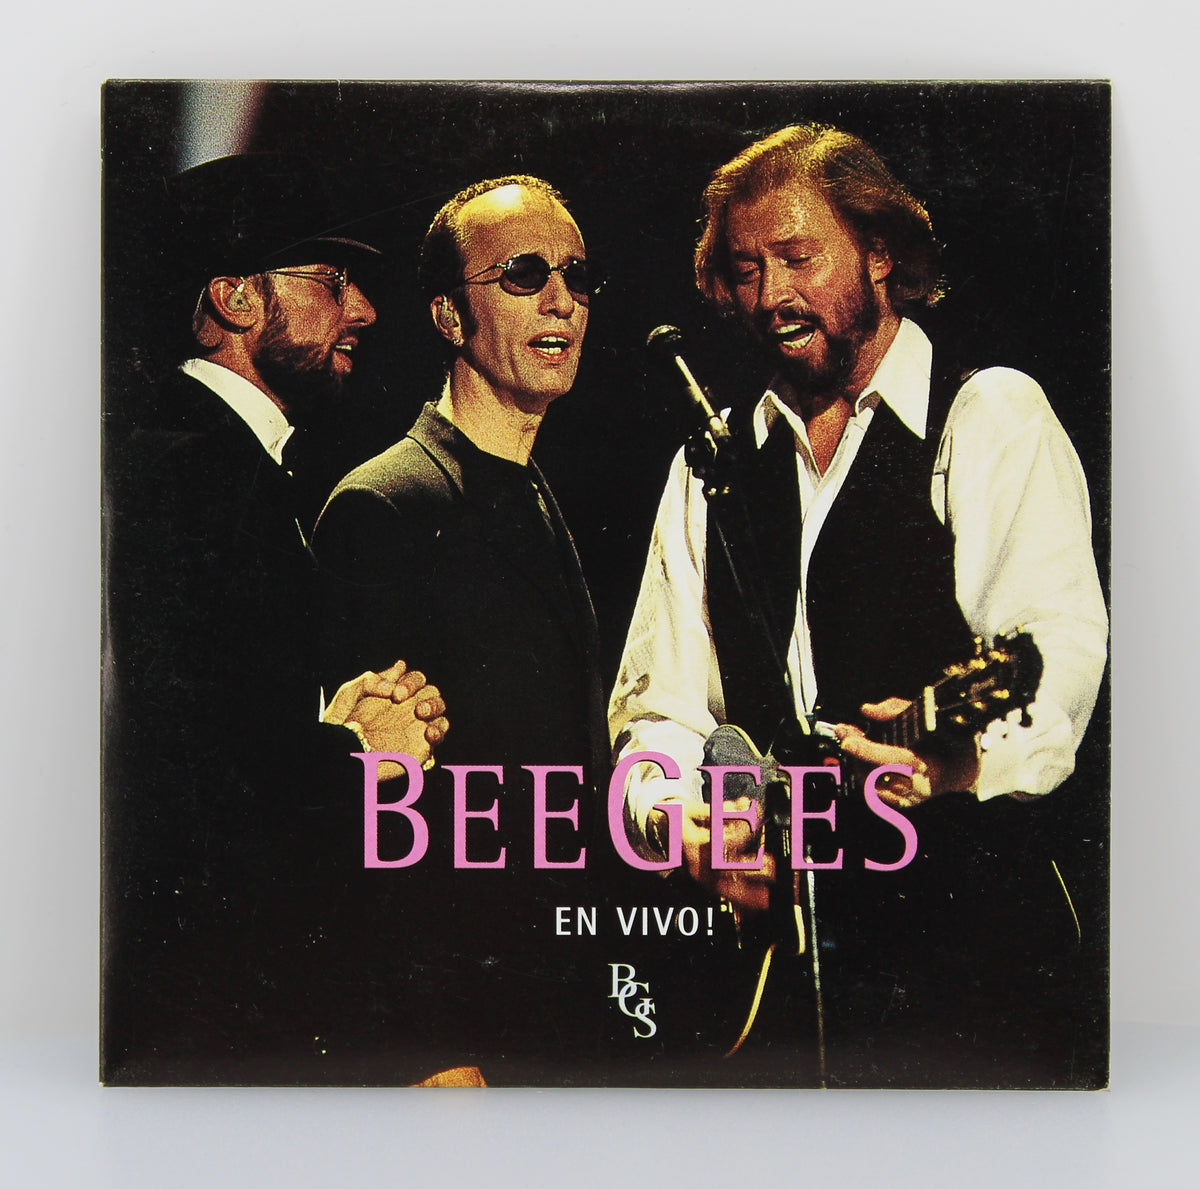 Bee Gees - En Vivo!, CD, Single, Promo, Mexico 1998